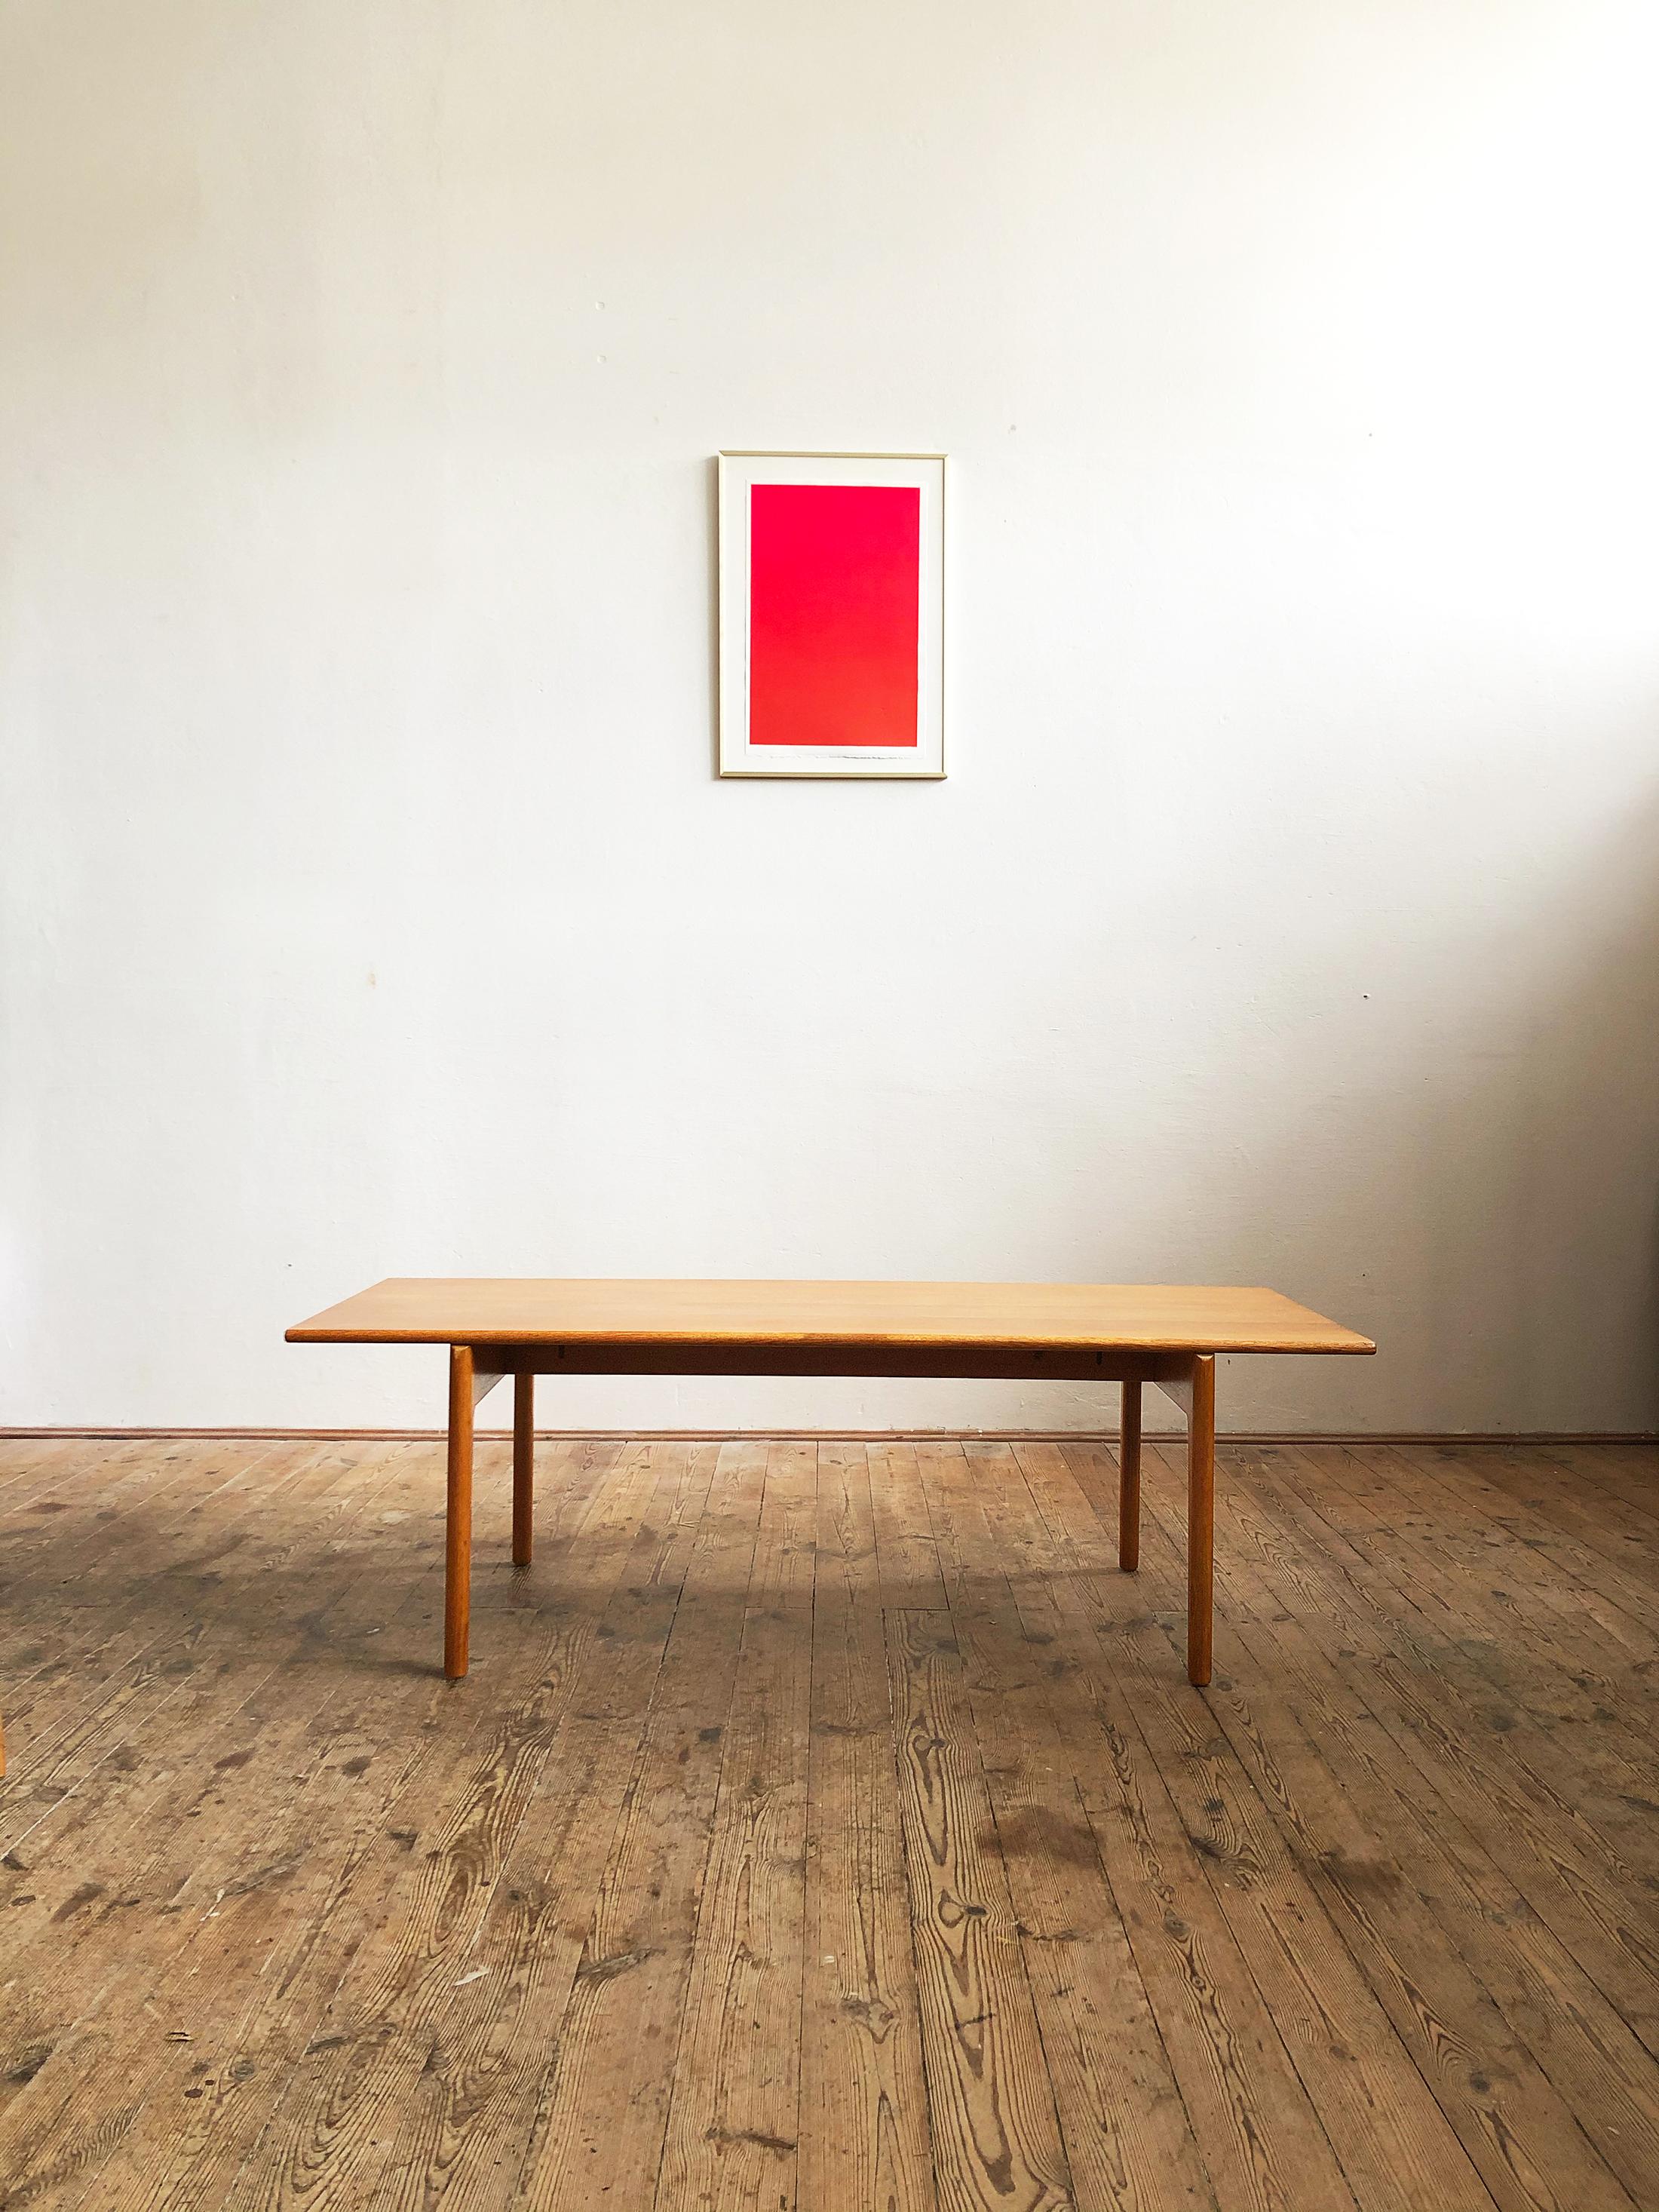 Abmessungen

Höhe: 48 cm

Breite: 150 cm 

Tiefe: 60 cm

Dieser minimalistische, aber elegante Couchtisch wurde in den 1950er Jahren von Hans Wegner entworfen und von Andreas Tuck in Dänemark hergestellt. Der Tisch besteht aus massivem Eichenholz